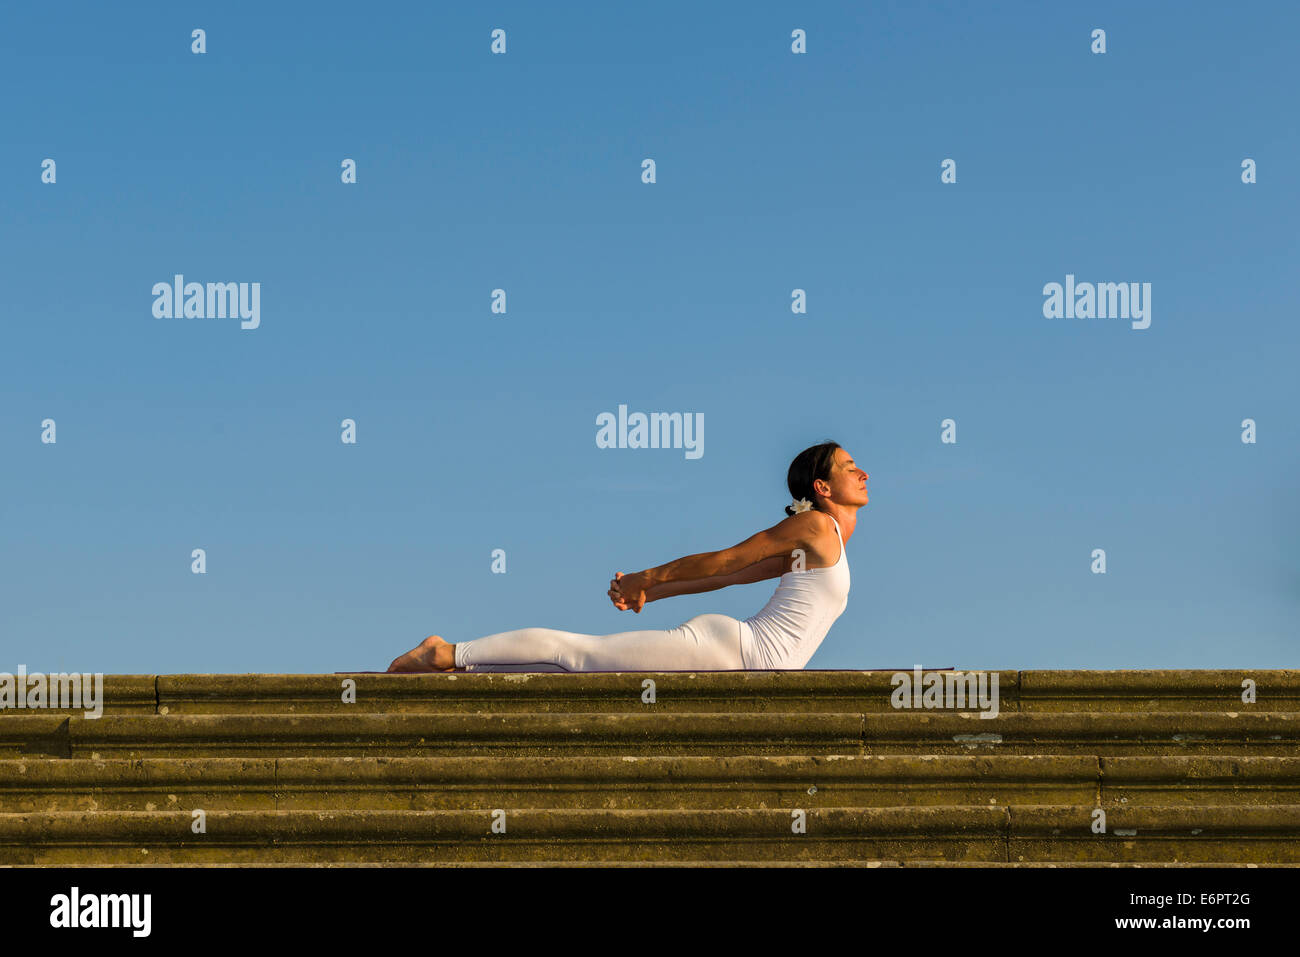 Junge Frau Hatha Yoga im Freien praktizieren, zeigt die Pose Bhujangasana, Kobra-pose Stockfoto